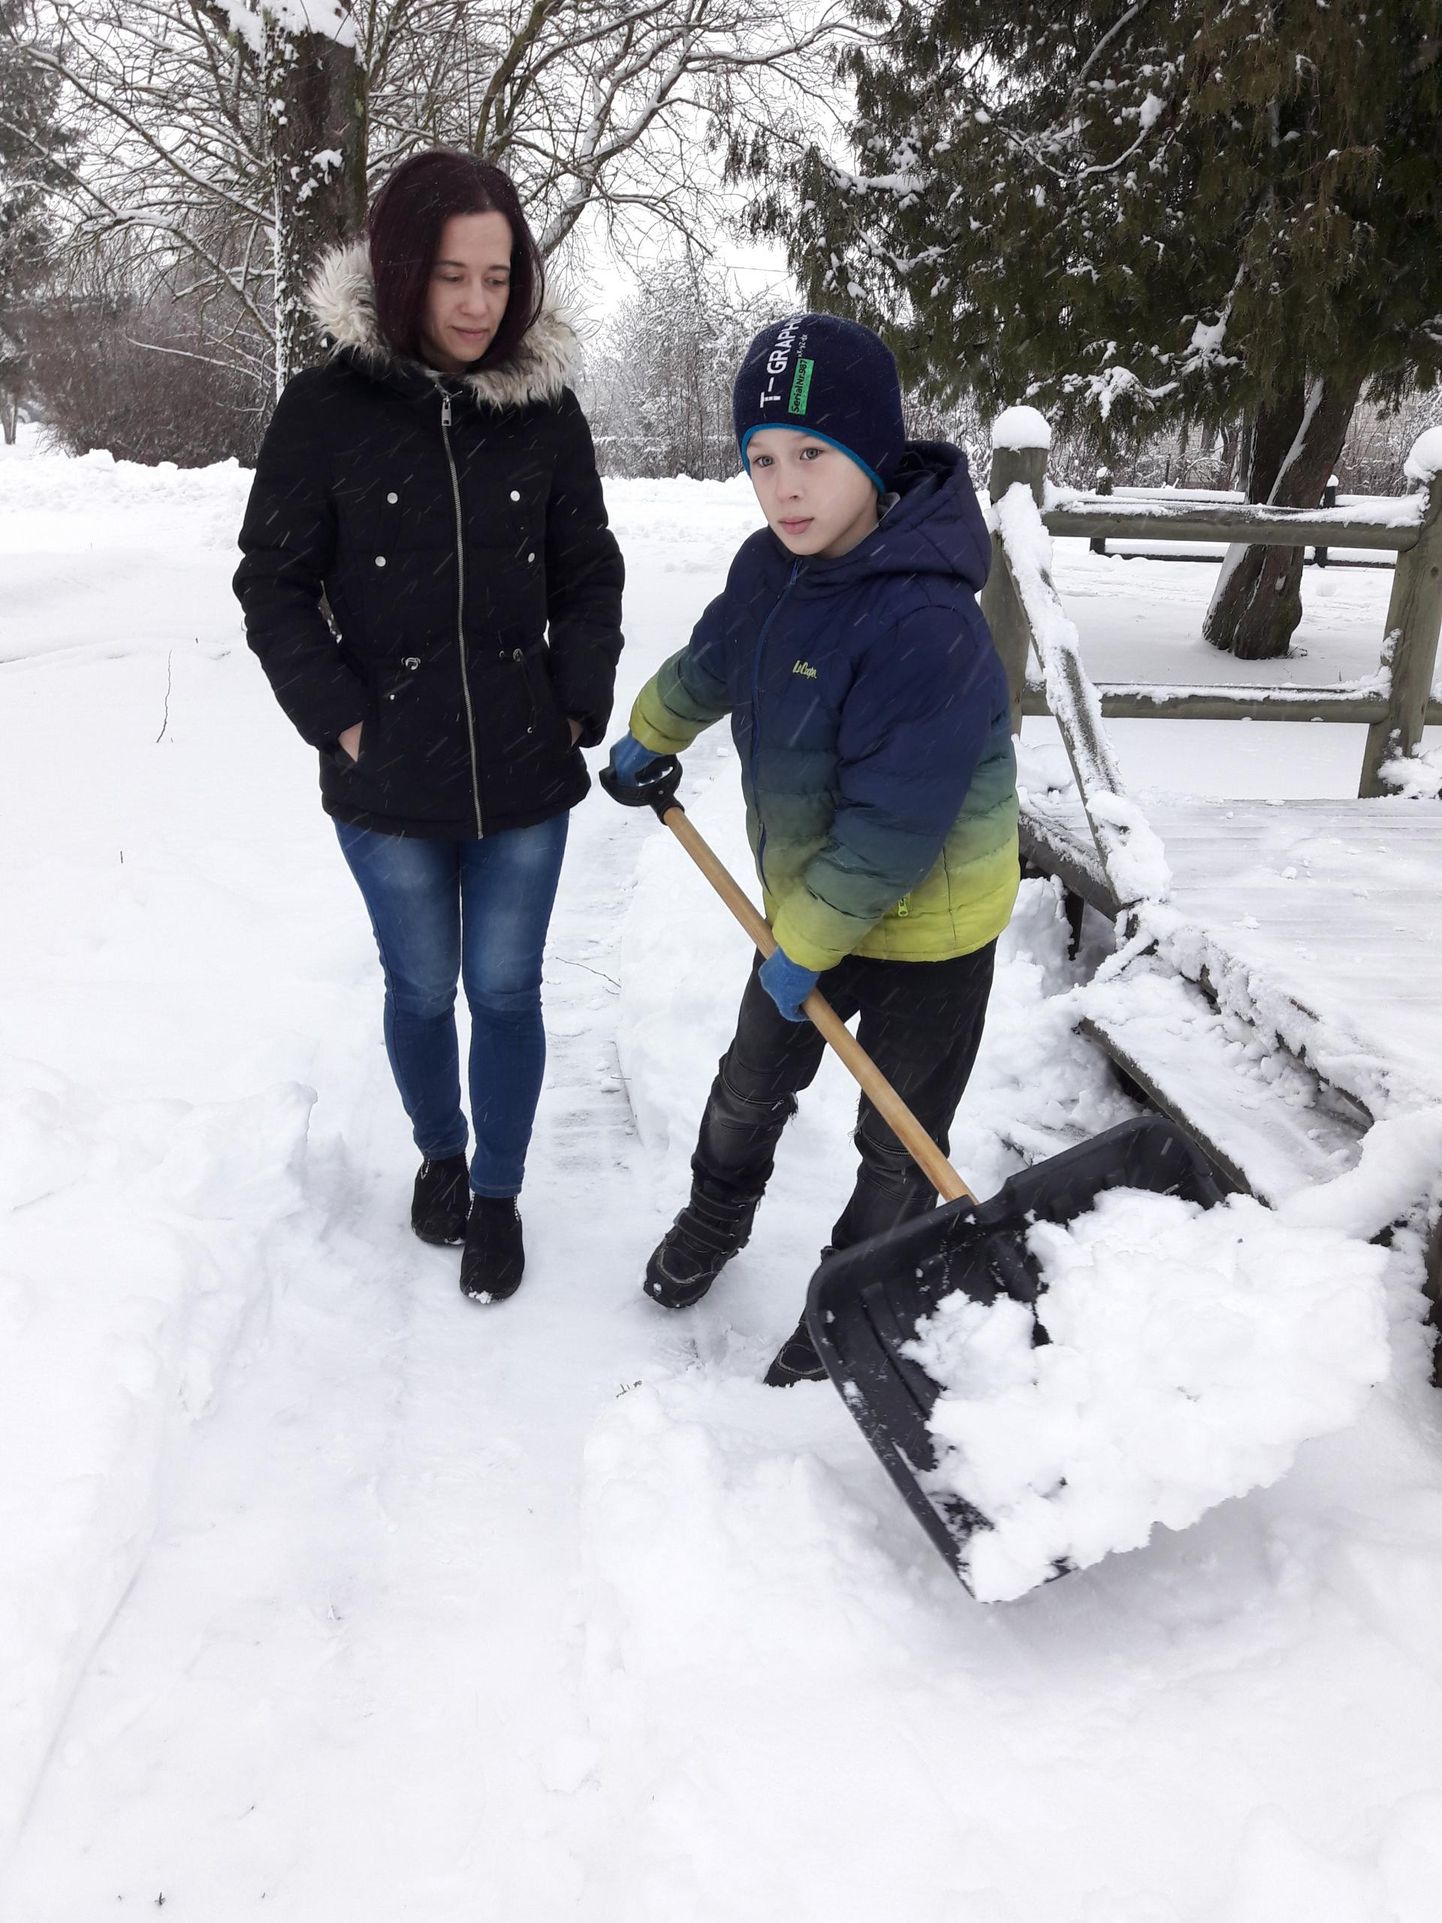 Lumekühveldamine on kümneaastase Renari suurim rõõm. Tema ema Liis Kuusk on sellega väga rahul.